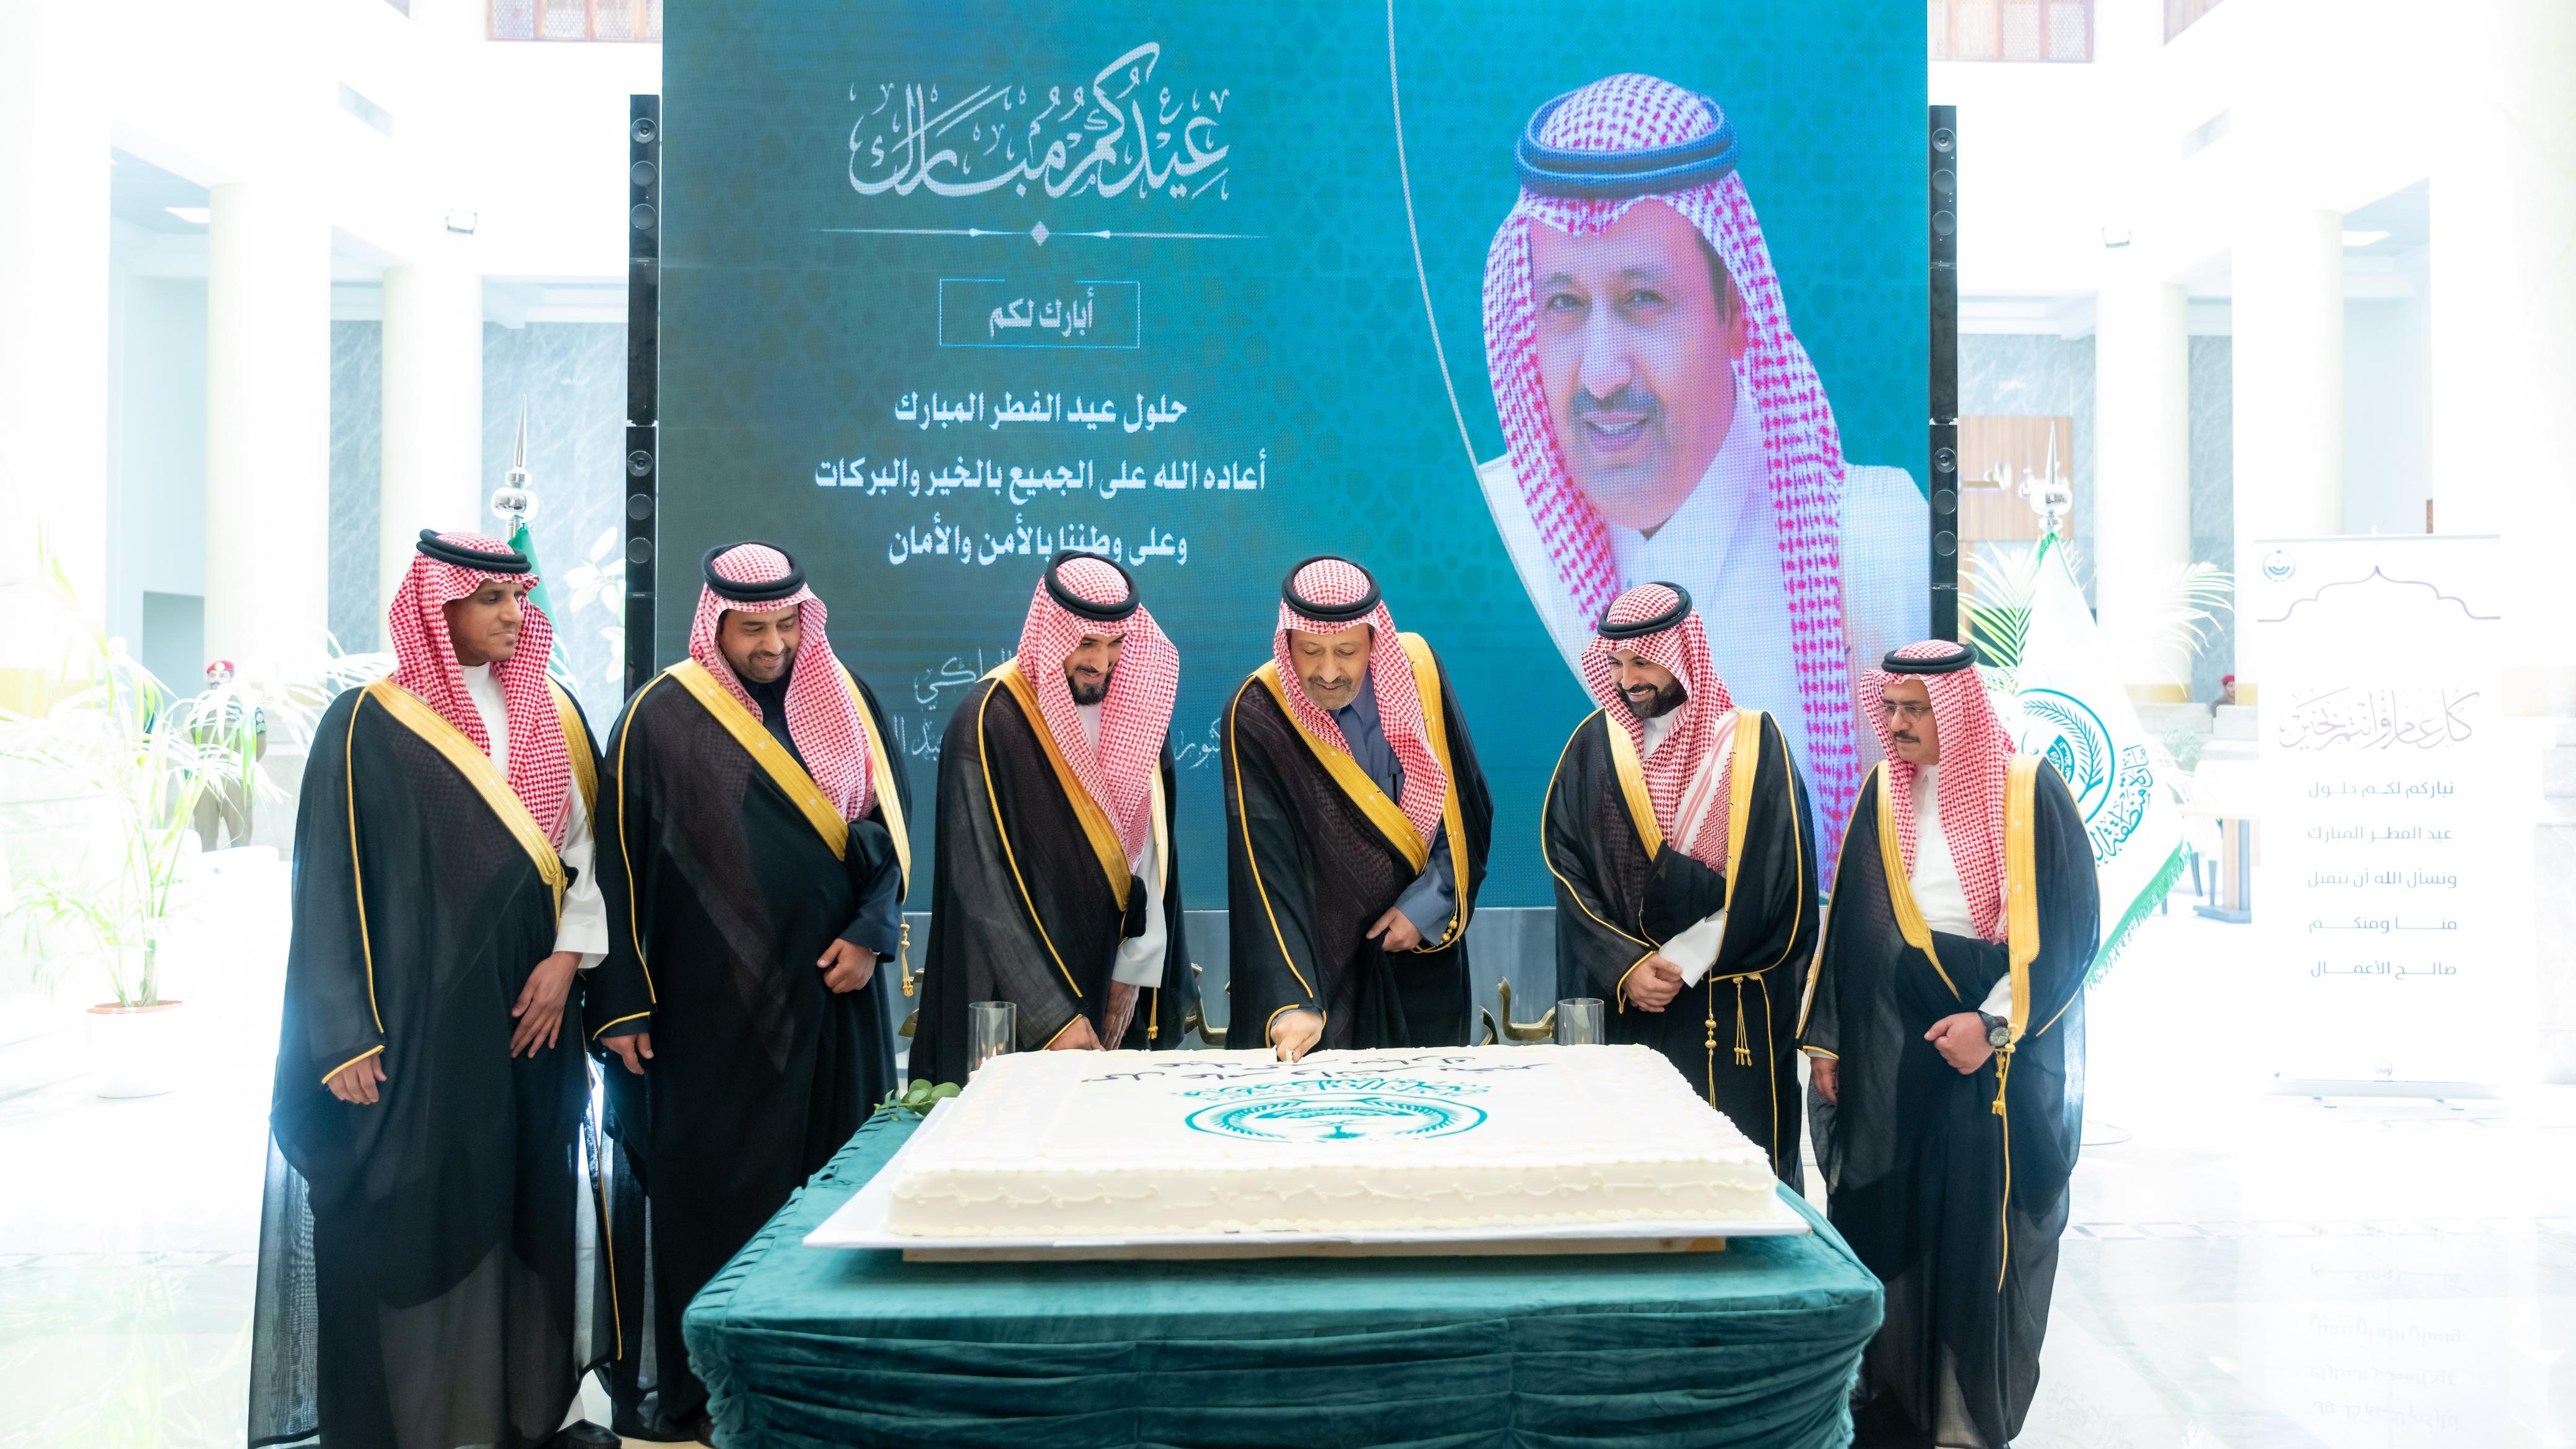 سمو أمير منطقة الباحة يستقبل منسوبي الإمارة وعدد من القيادات المهنئين بعيد الفطر المبارك